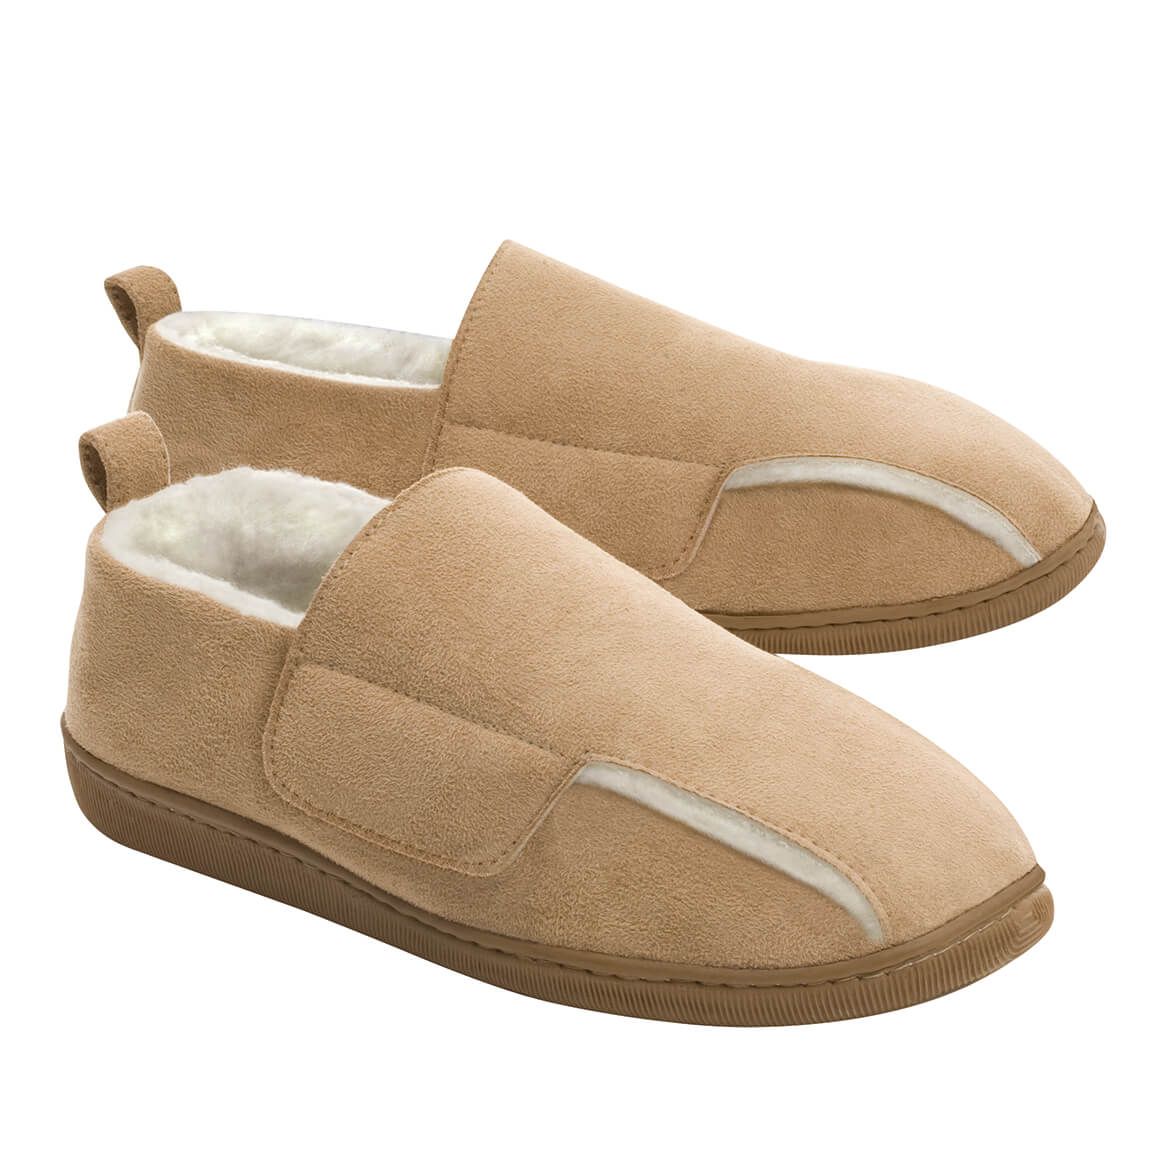 Adjustable Swollen Feet Loafers Ladies + '-' + 369907